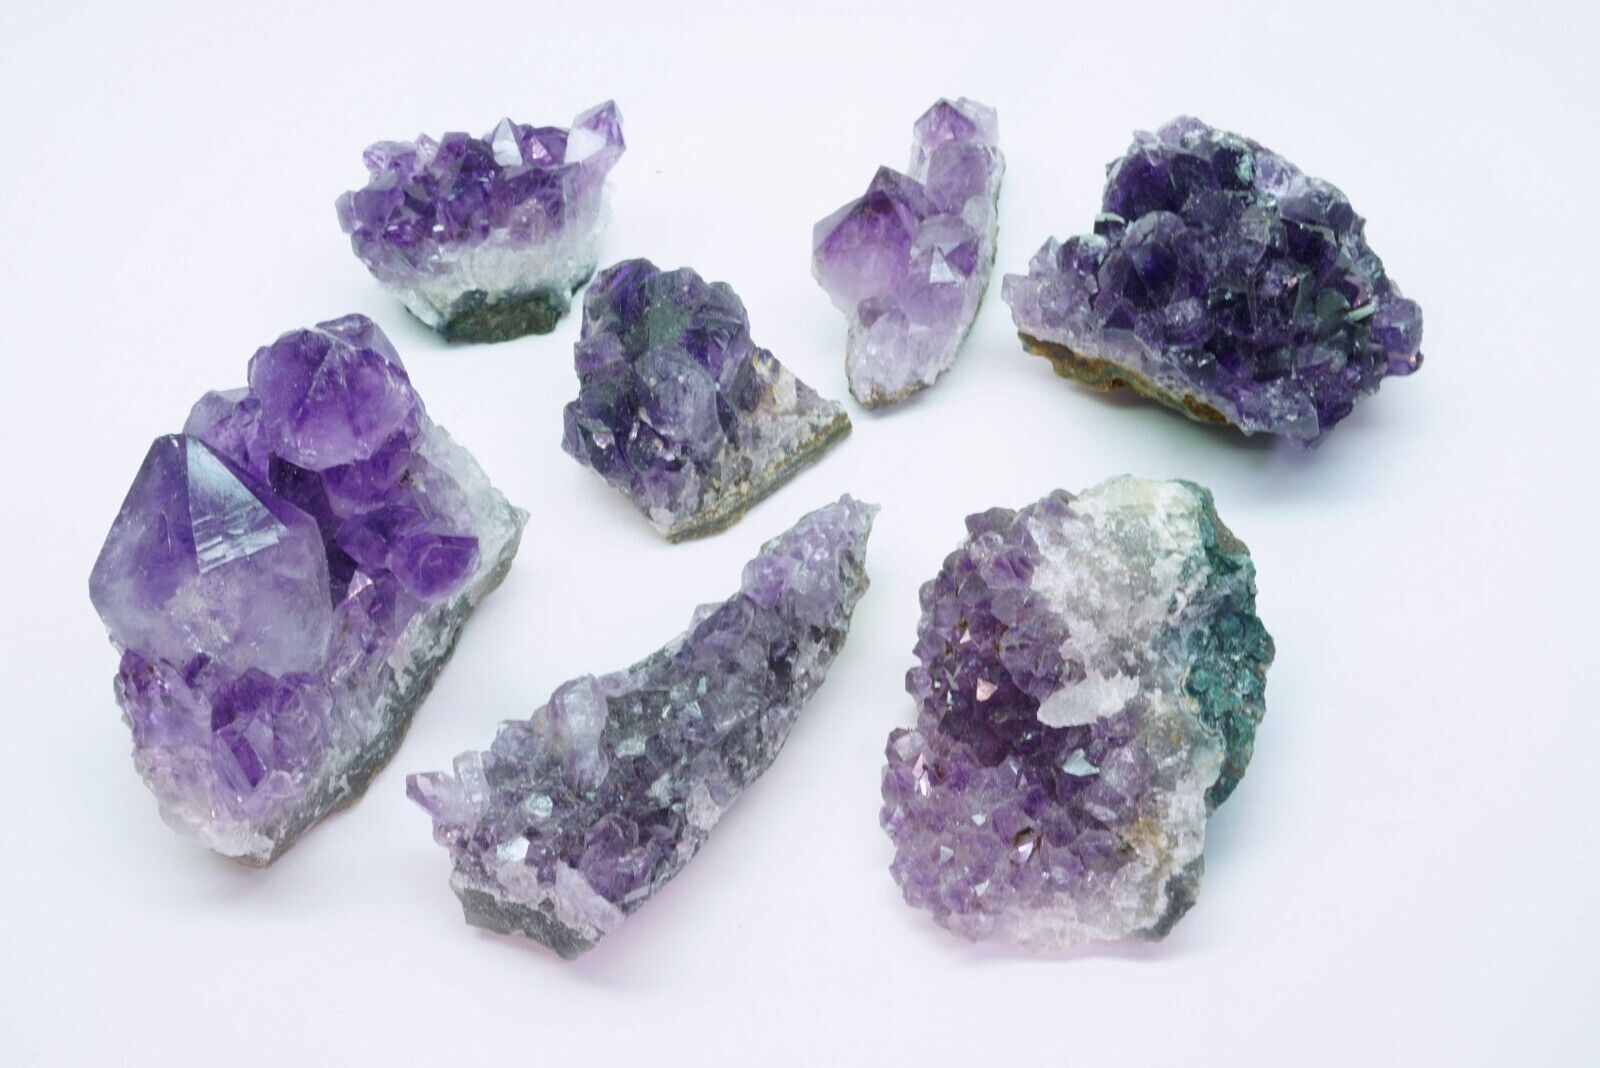 Amethyst Geode Druzy 1 Lb Lots Crystal Quartz Cluster Natural Specimen Gemstones